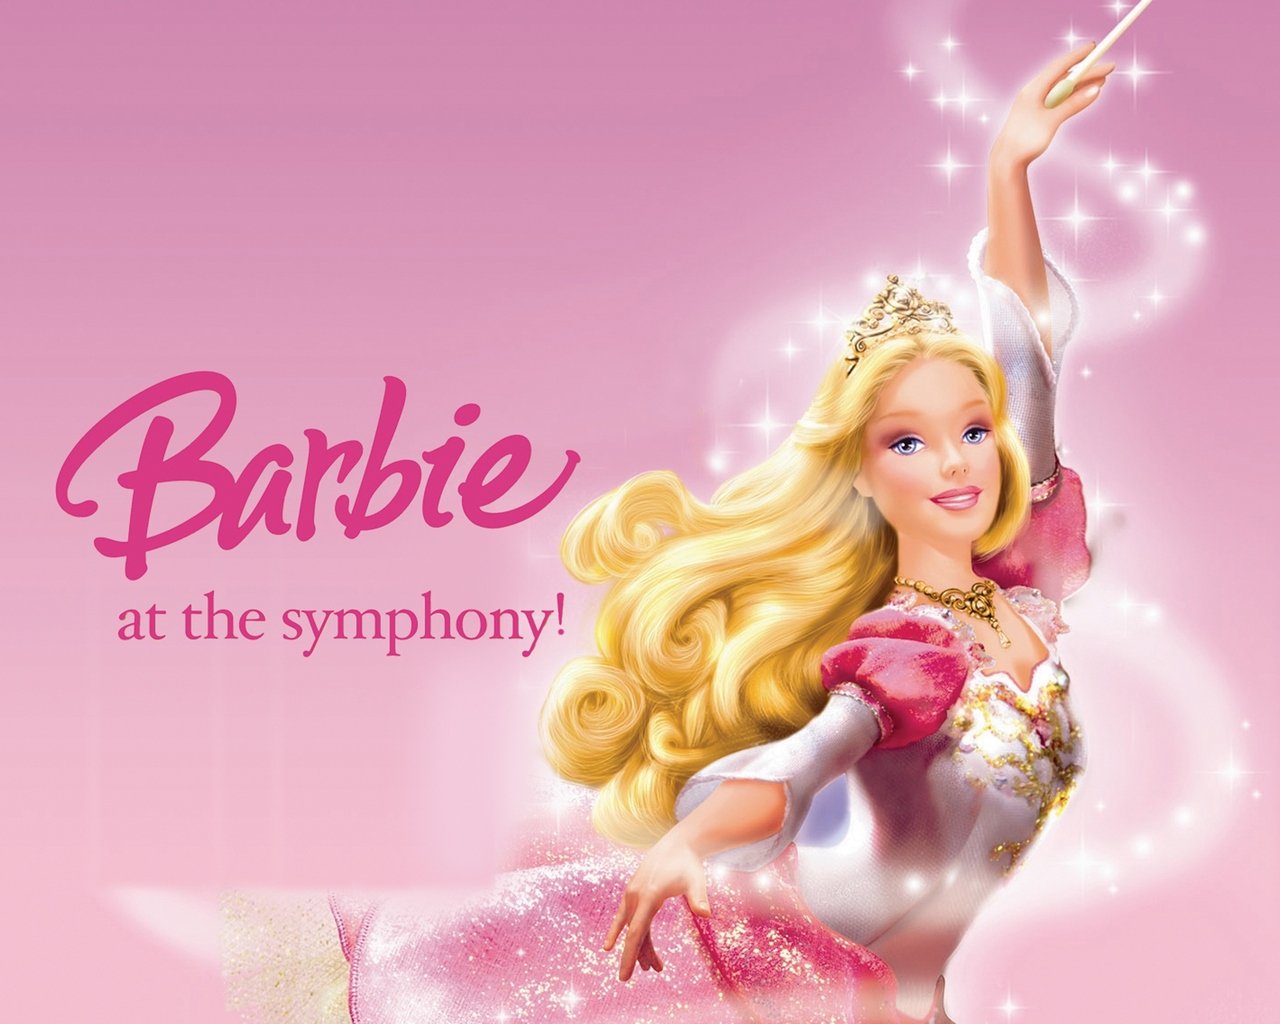 49+] Wallpaper of Barbie Princess - WallpaperSafari